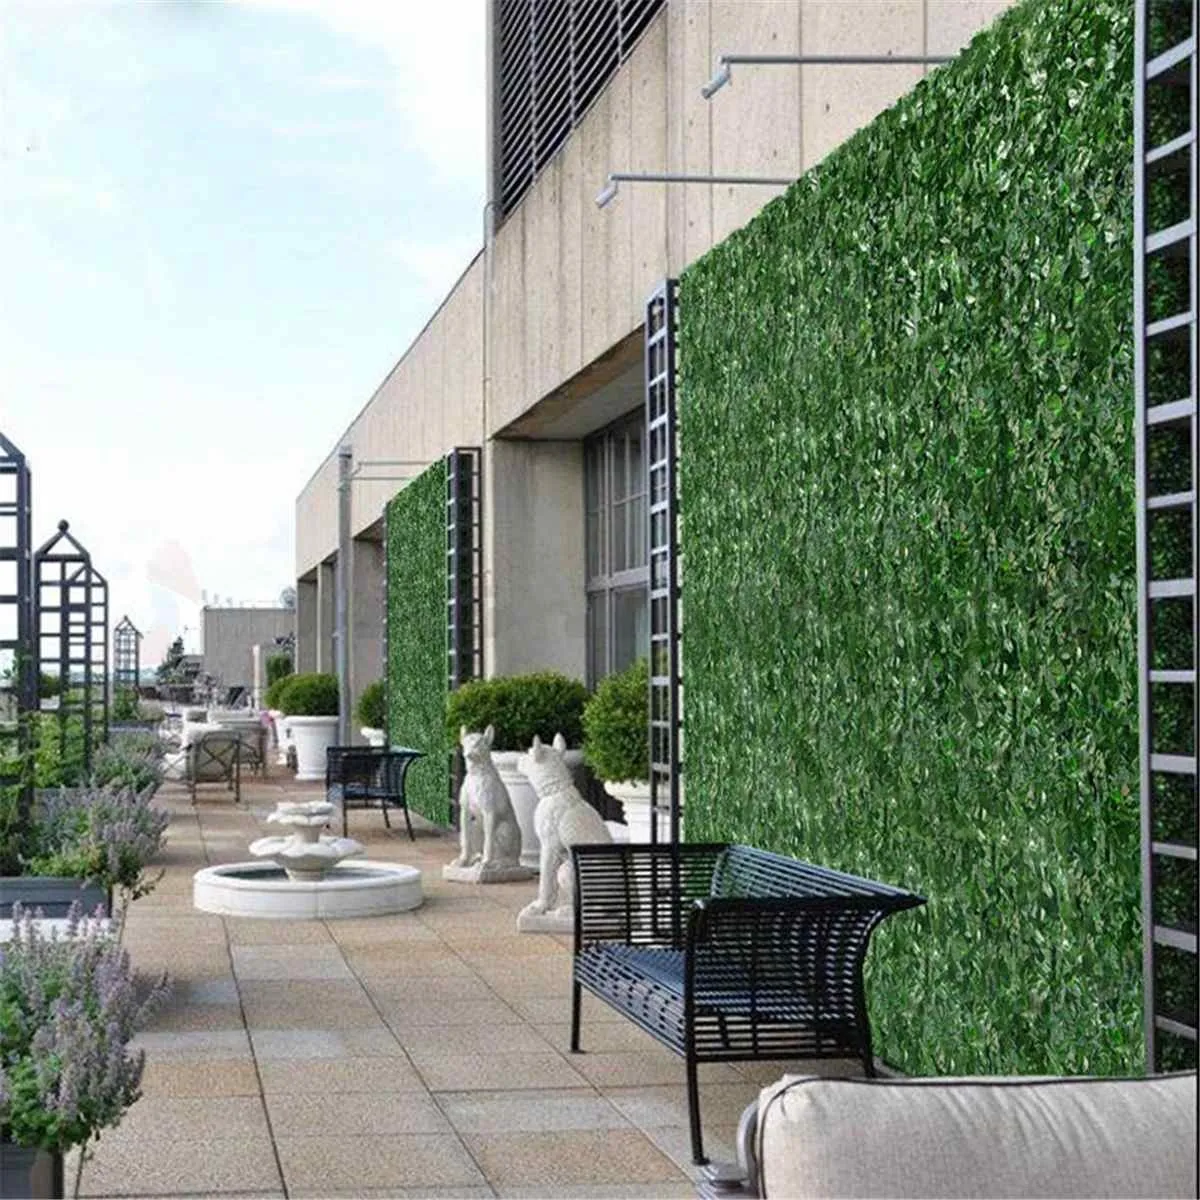 植物の壁人工芝の箱ウッドヘッジガーデン裏庭の家の装飾シミュレーショングラス芝rug芝生屋外の花の壁1x3m T200330